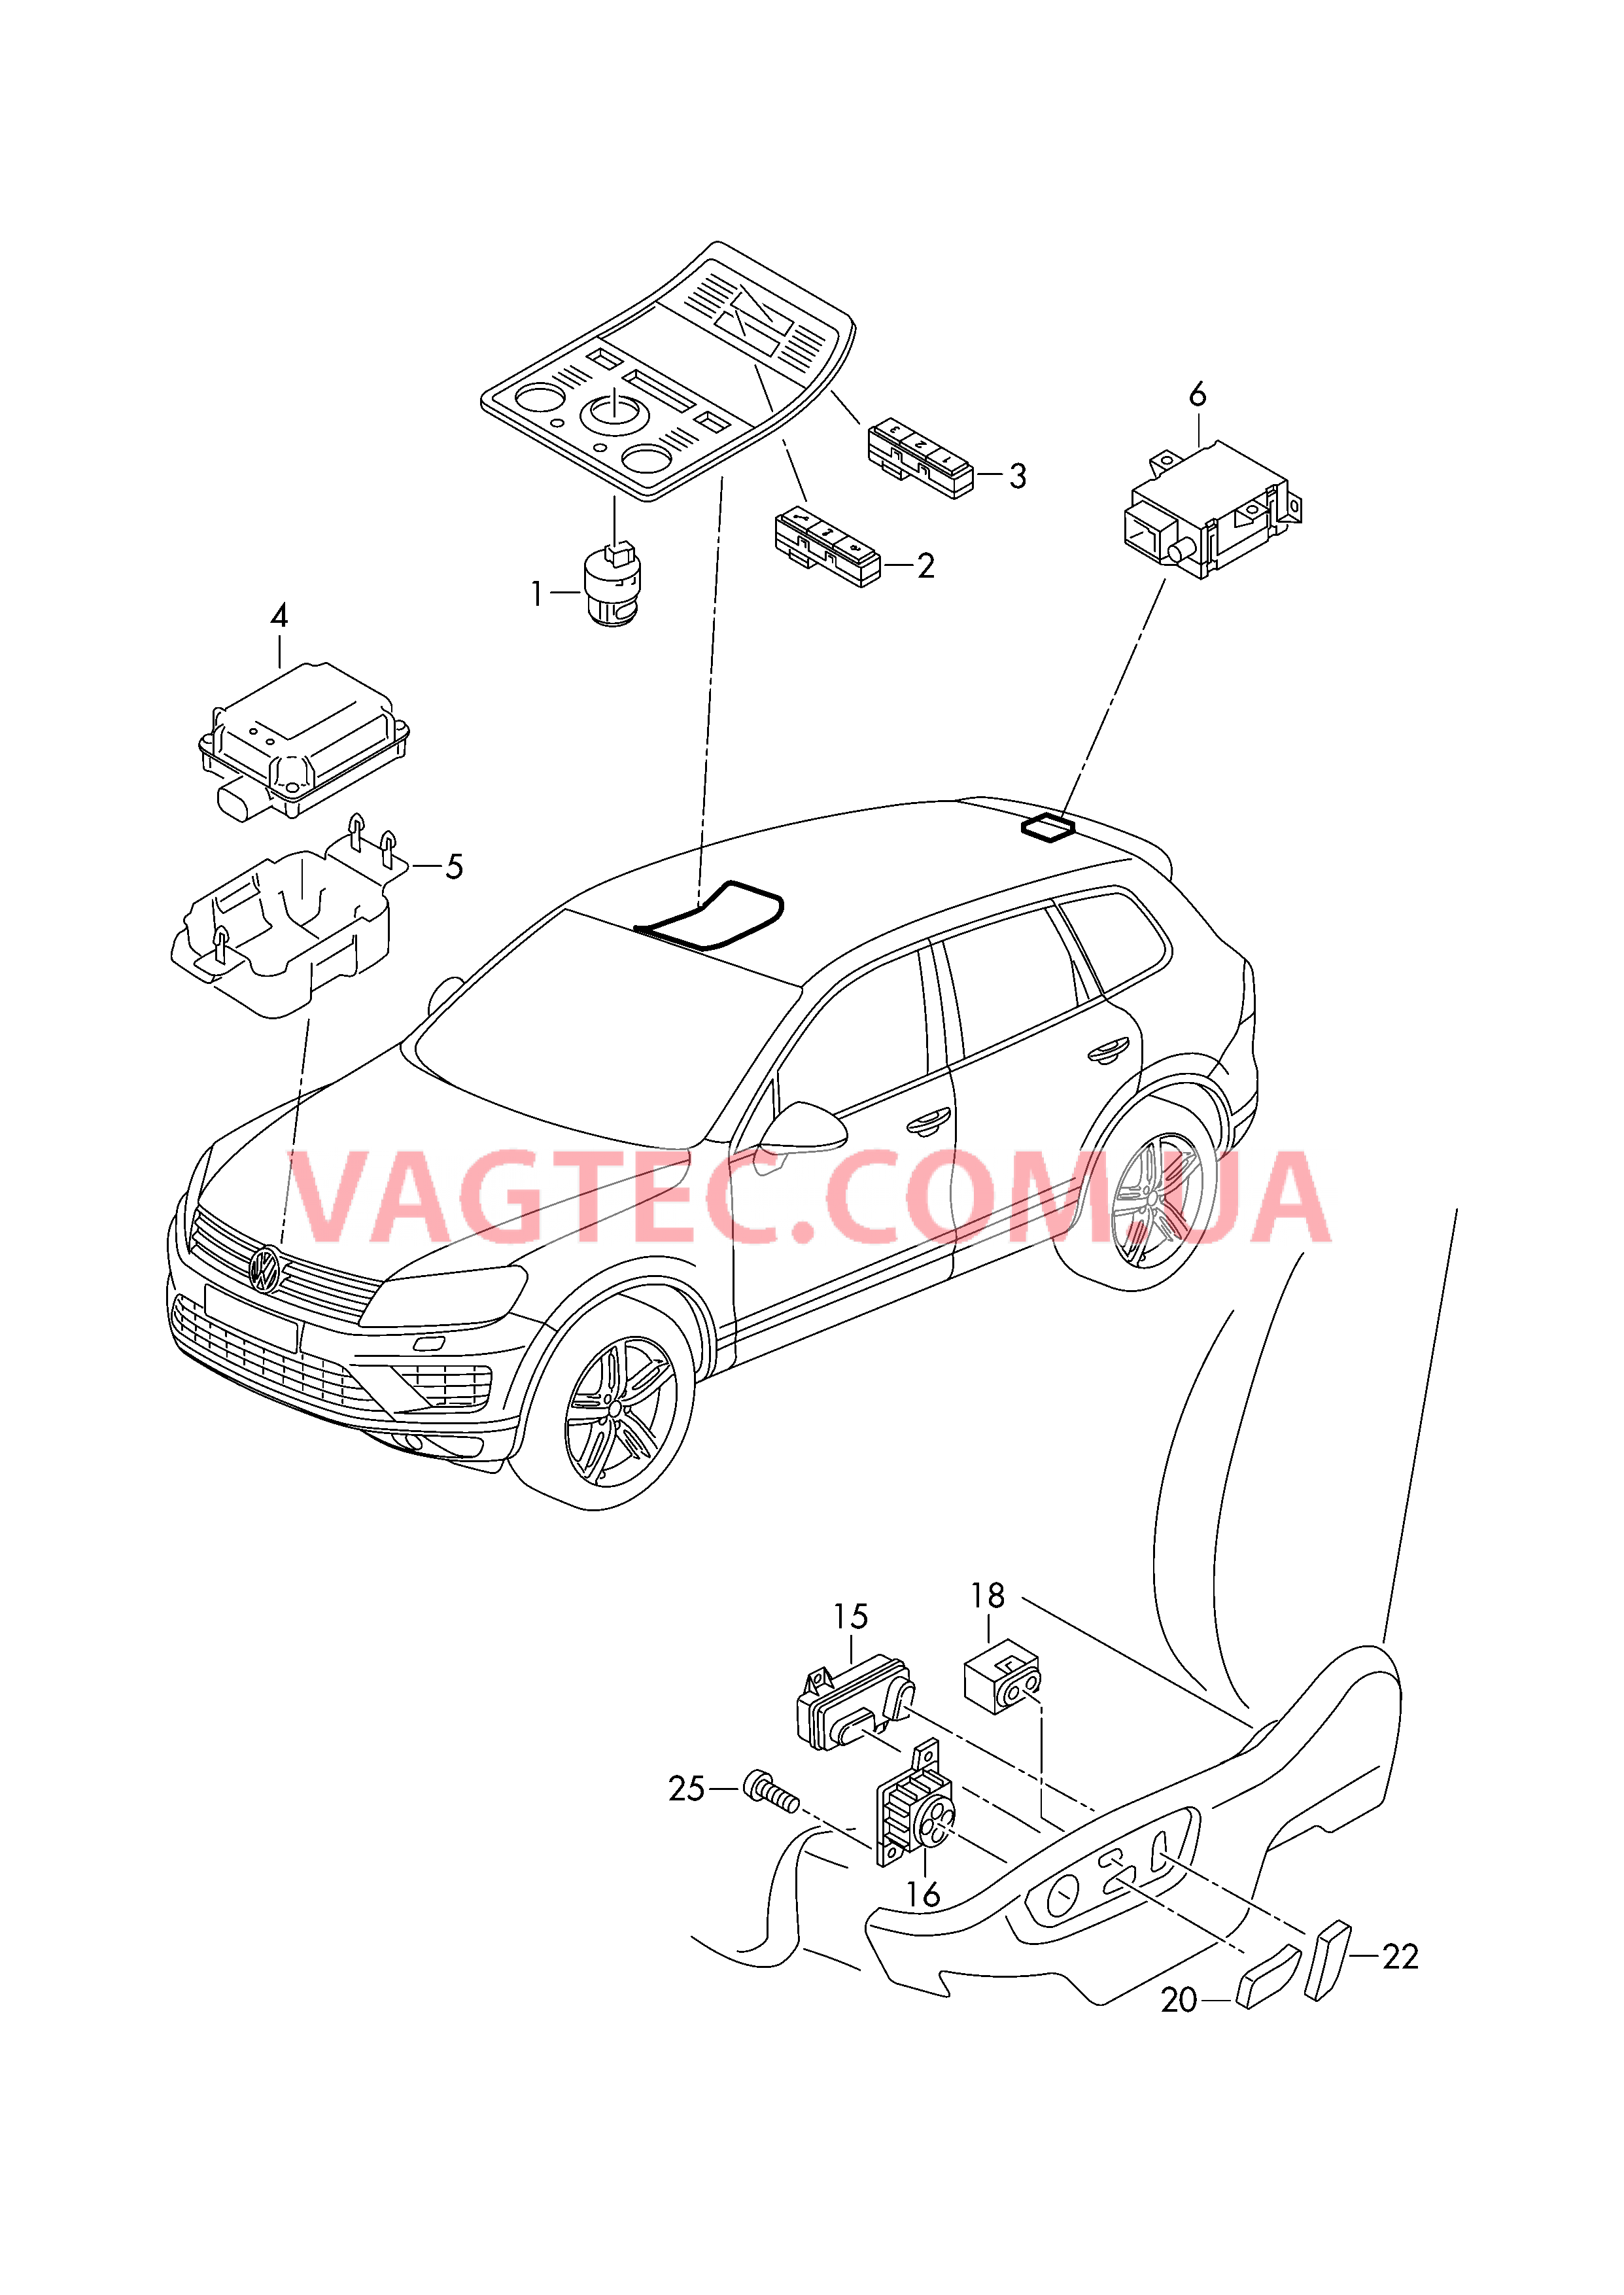 Выключатель на крыше Выкл-тель регулир-ки положения сиденья и спинки  БУ системы открывания ворот гаража  для VOLKSWAGEN Touareg 2016